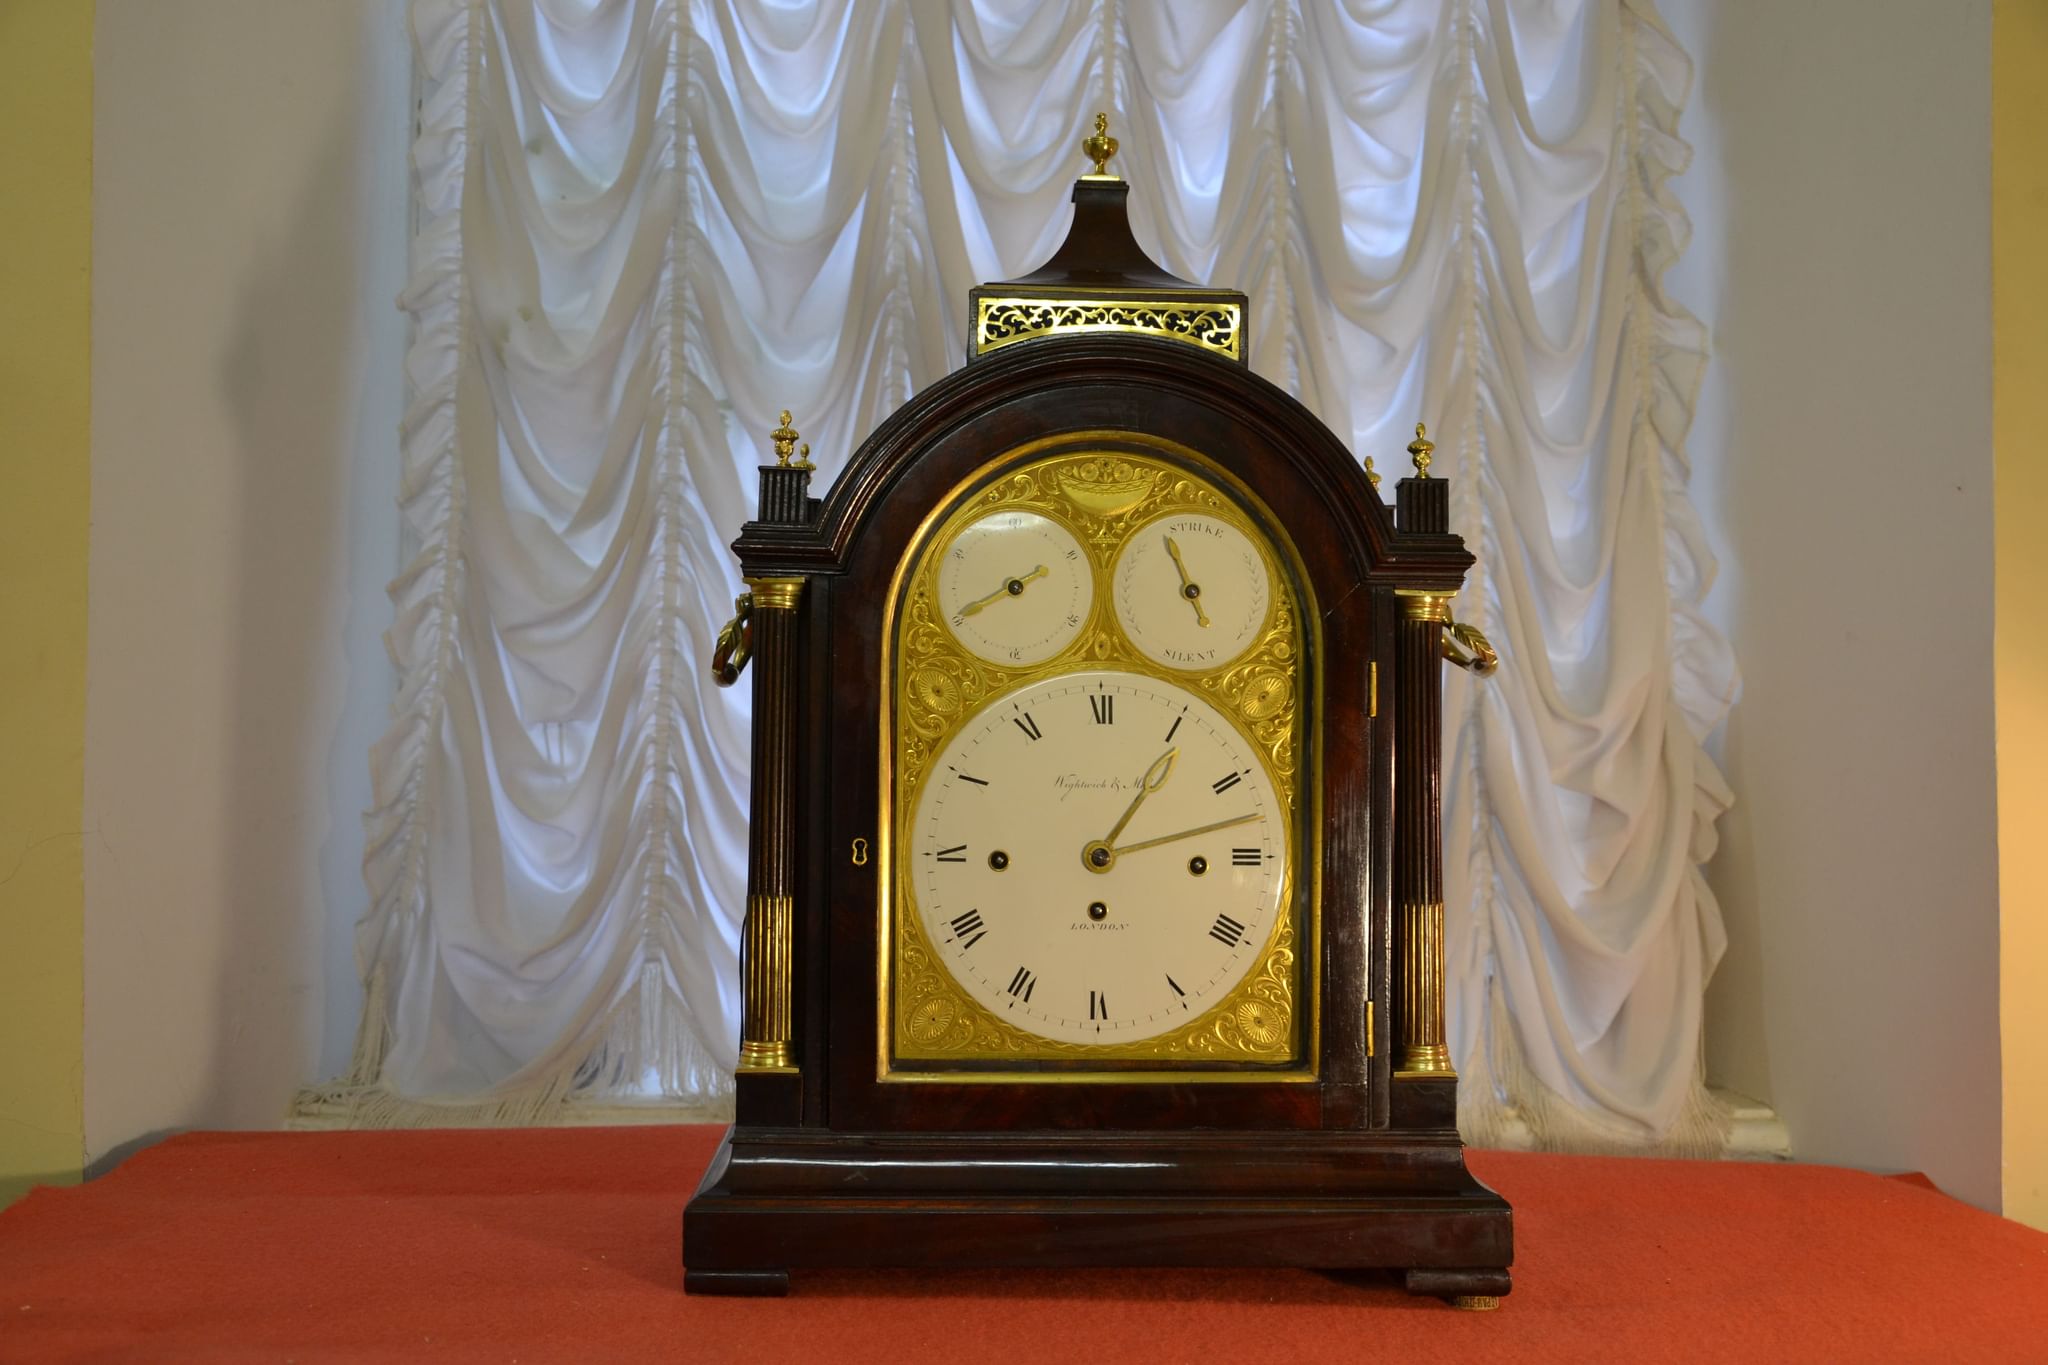 Выставка часов спб. Выставка часов в Санкт-Петербурге. Башенные часы Гатчинского дворца. Часы золотое время. Выставка часов в Лондоне.